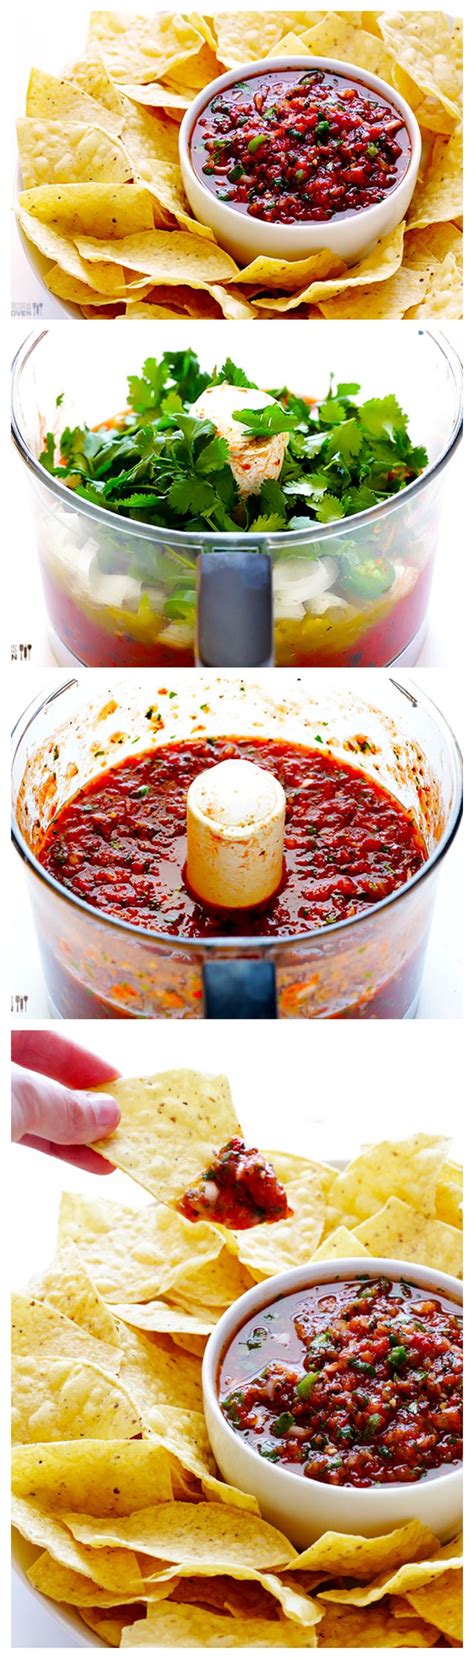 Mexican Food Recipes Vegan Recipes Cooking Recipes Sauce Recipes